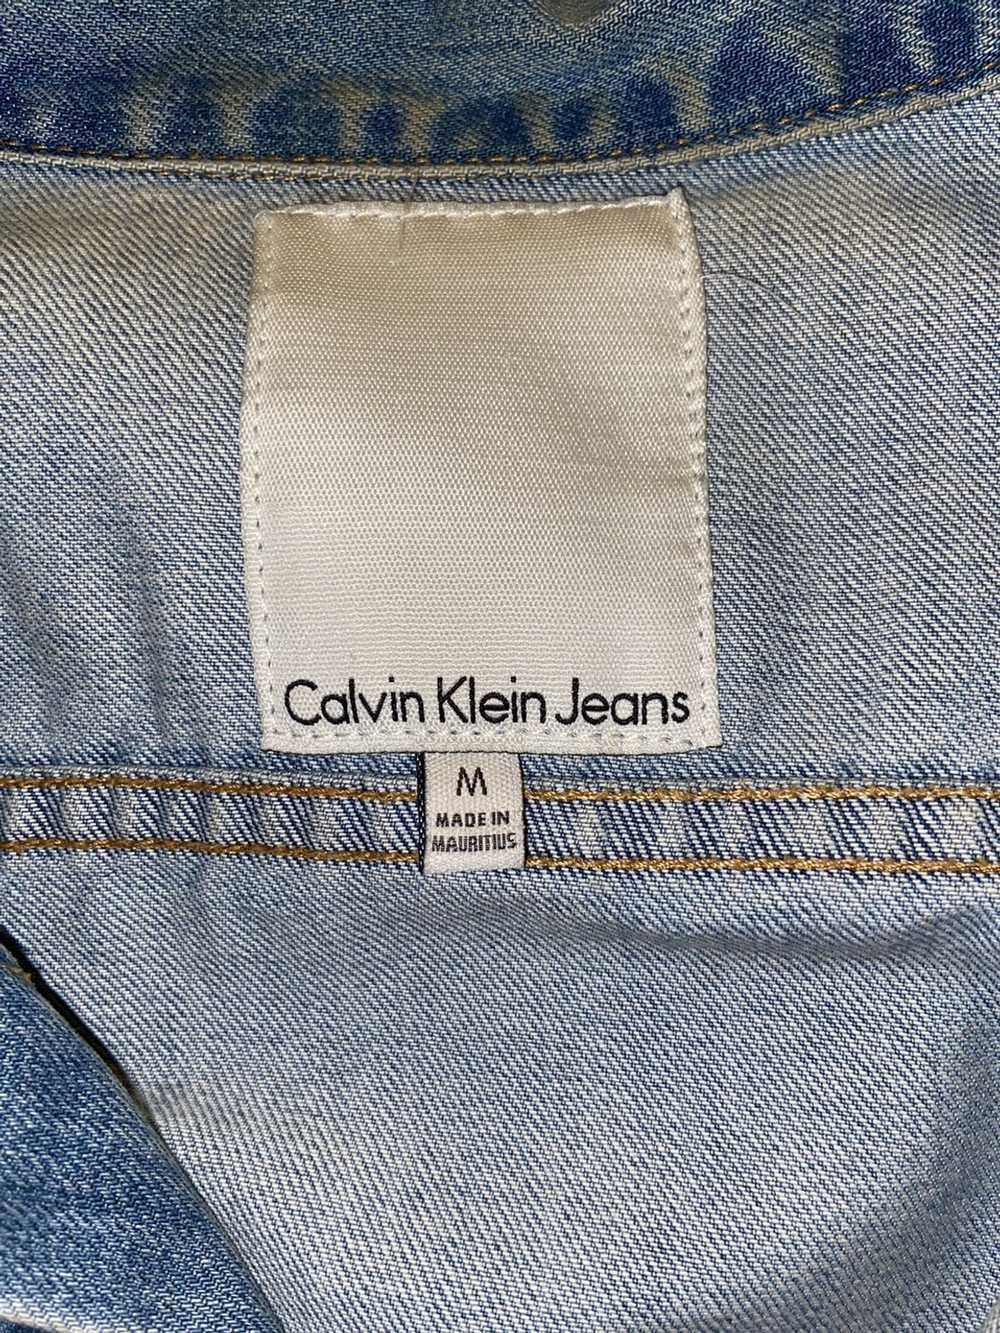 Calvin Klein Calvin Klein Jeans Denim Jacket - image 3